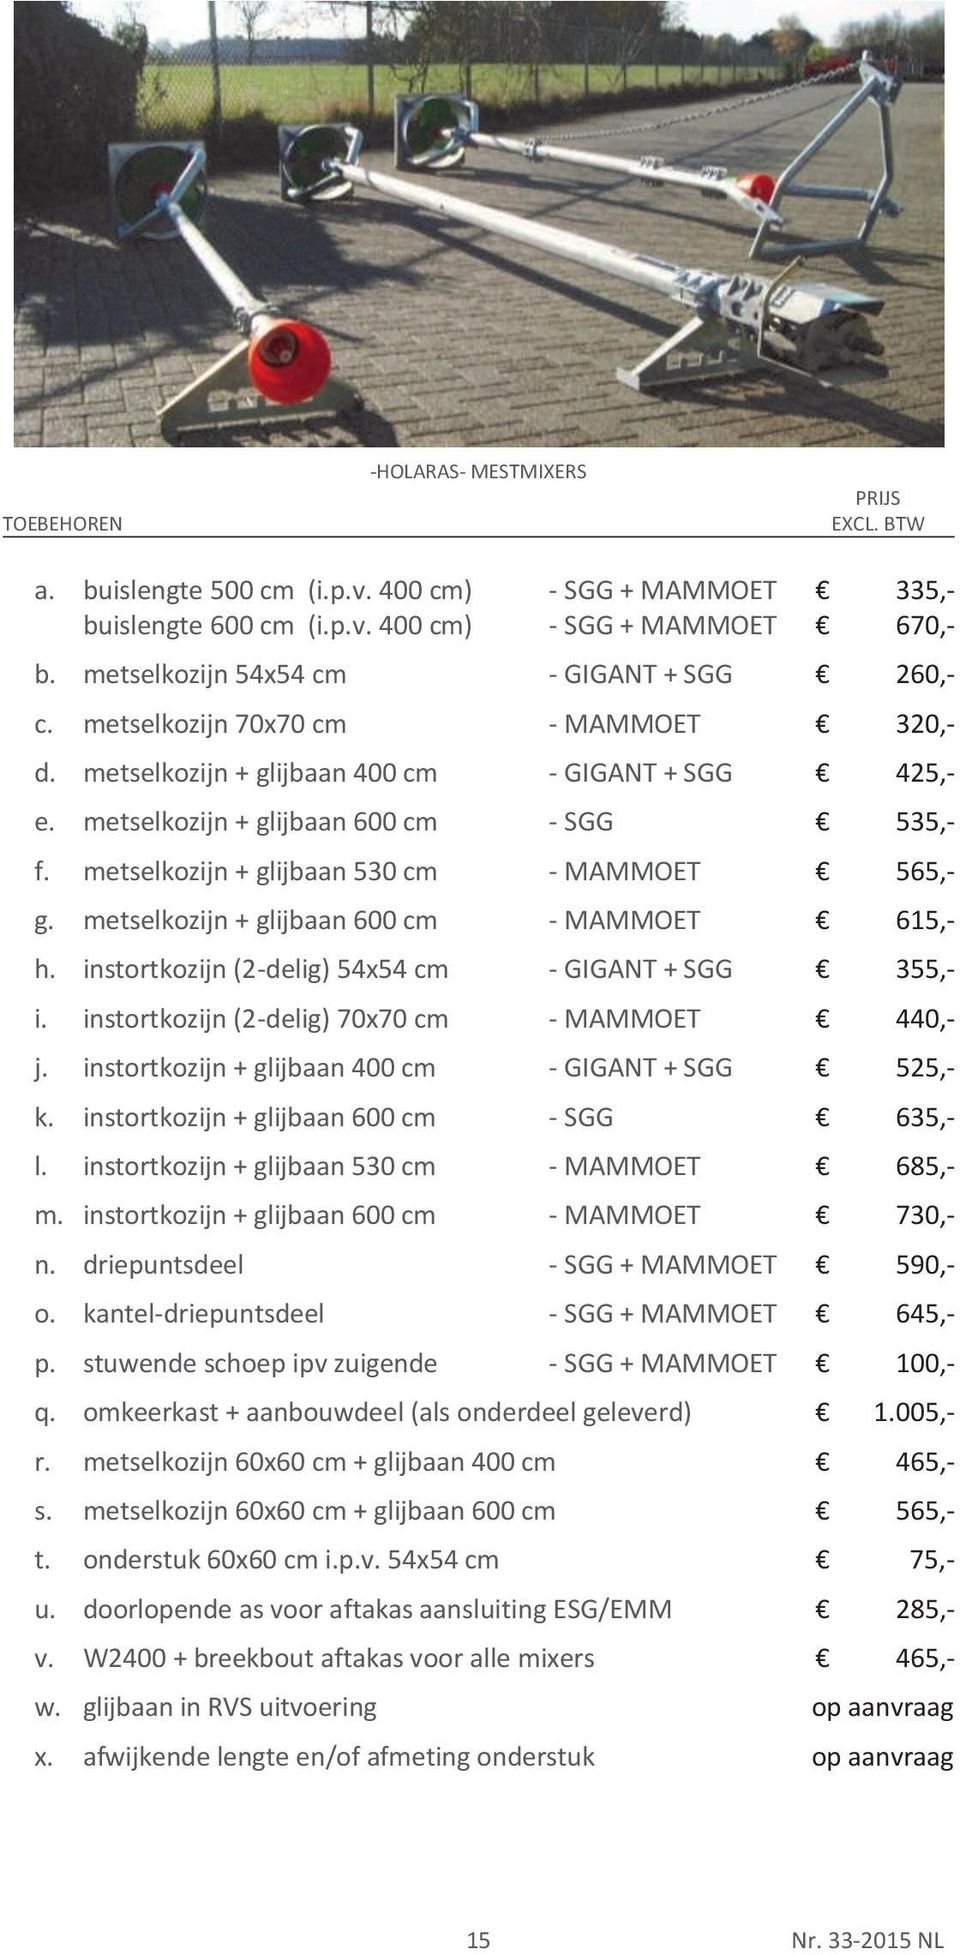 metselkozijn + glijbaan 600 cm - MAMMOET h. instortkozijn (2-delig) 54x54 cm - GIGANT + SGG i. instortkozijn (2-delig) 70x70 cm - MAMMOET j. instortkozijn + glijbaan 400 cm - GIGANT + SGG k.